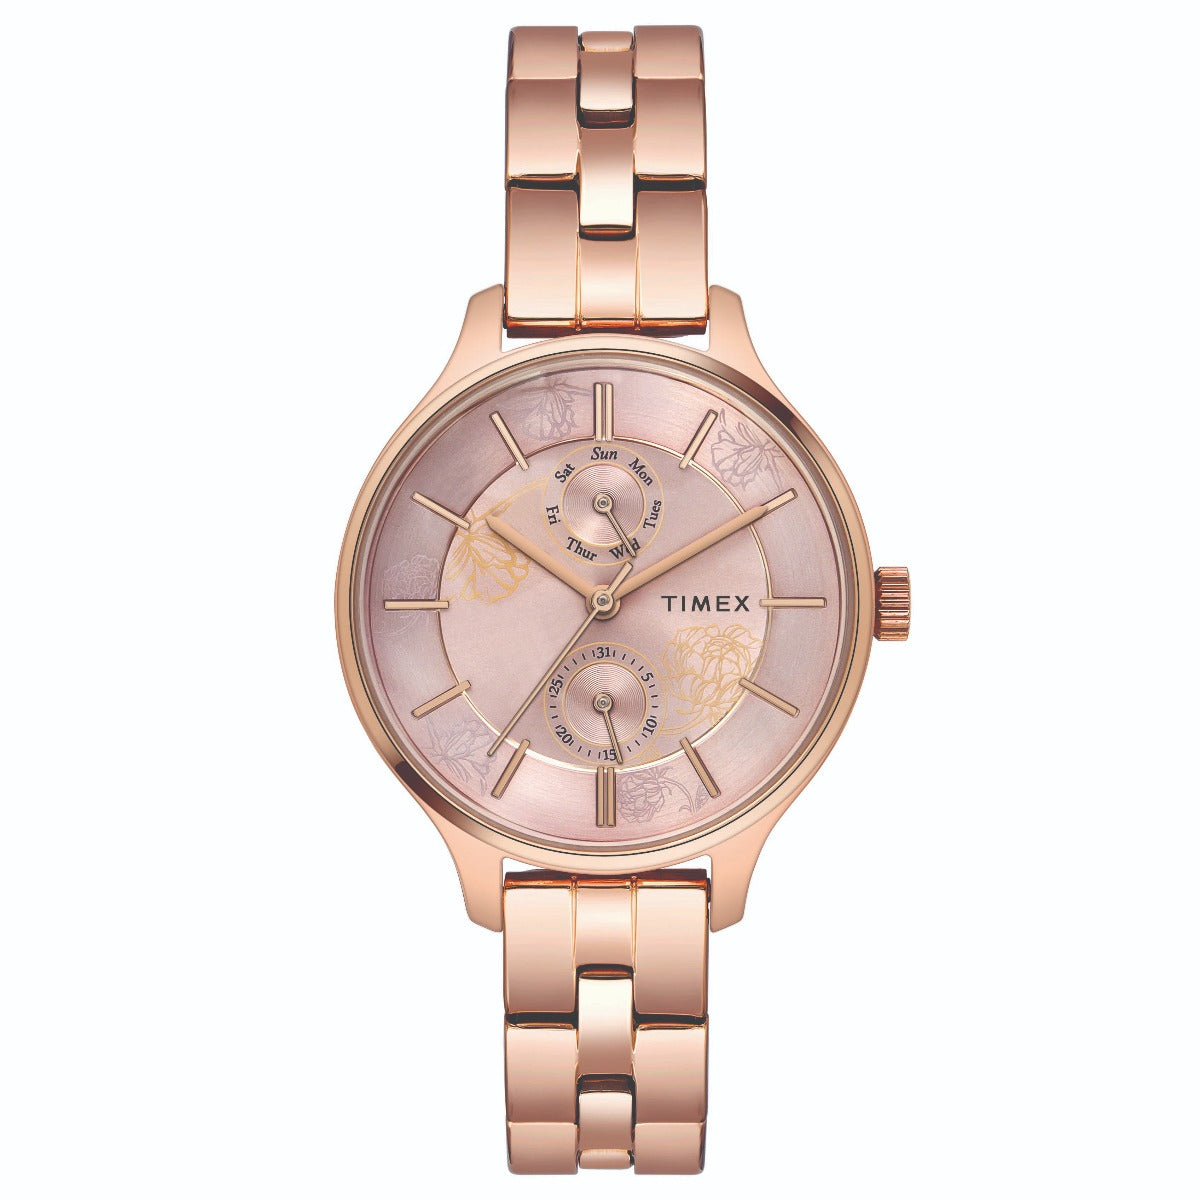 Women's Watches Under $500 | Luxury Brands | Watch Warehouse